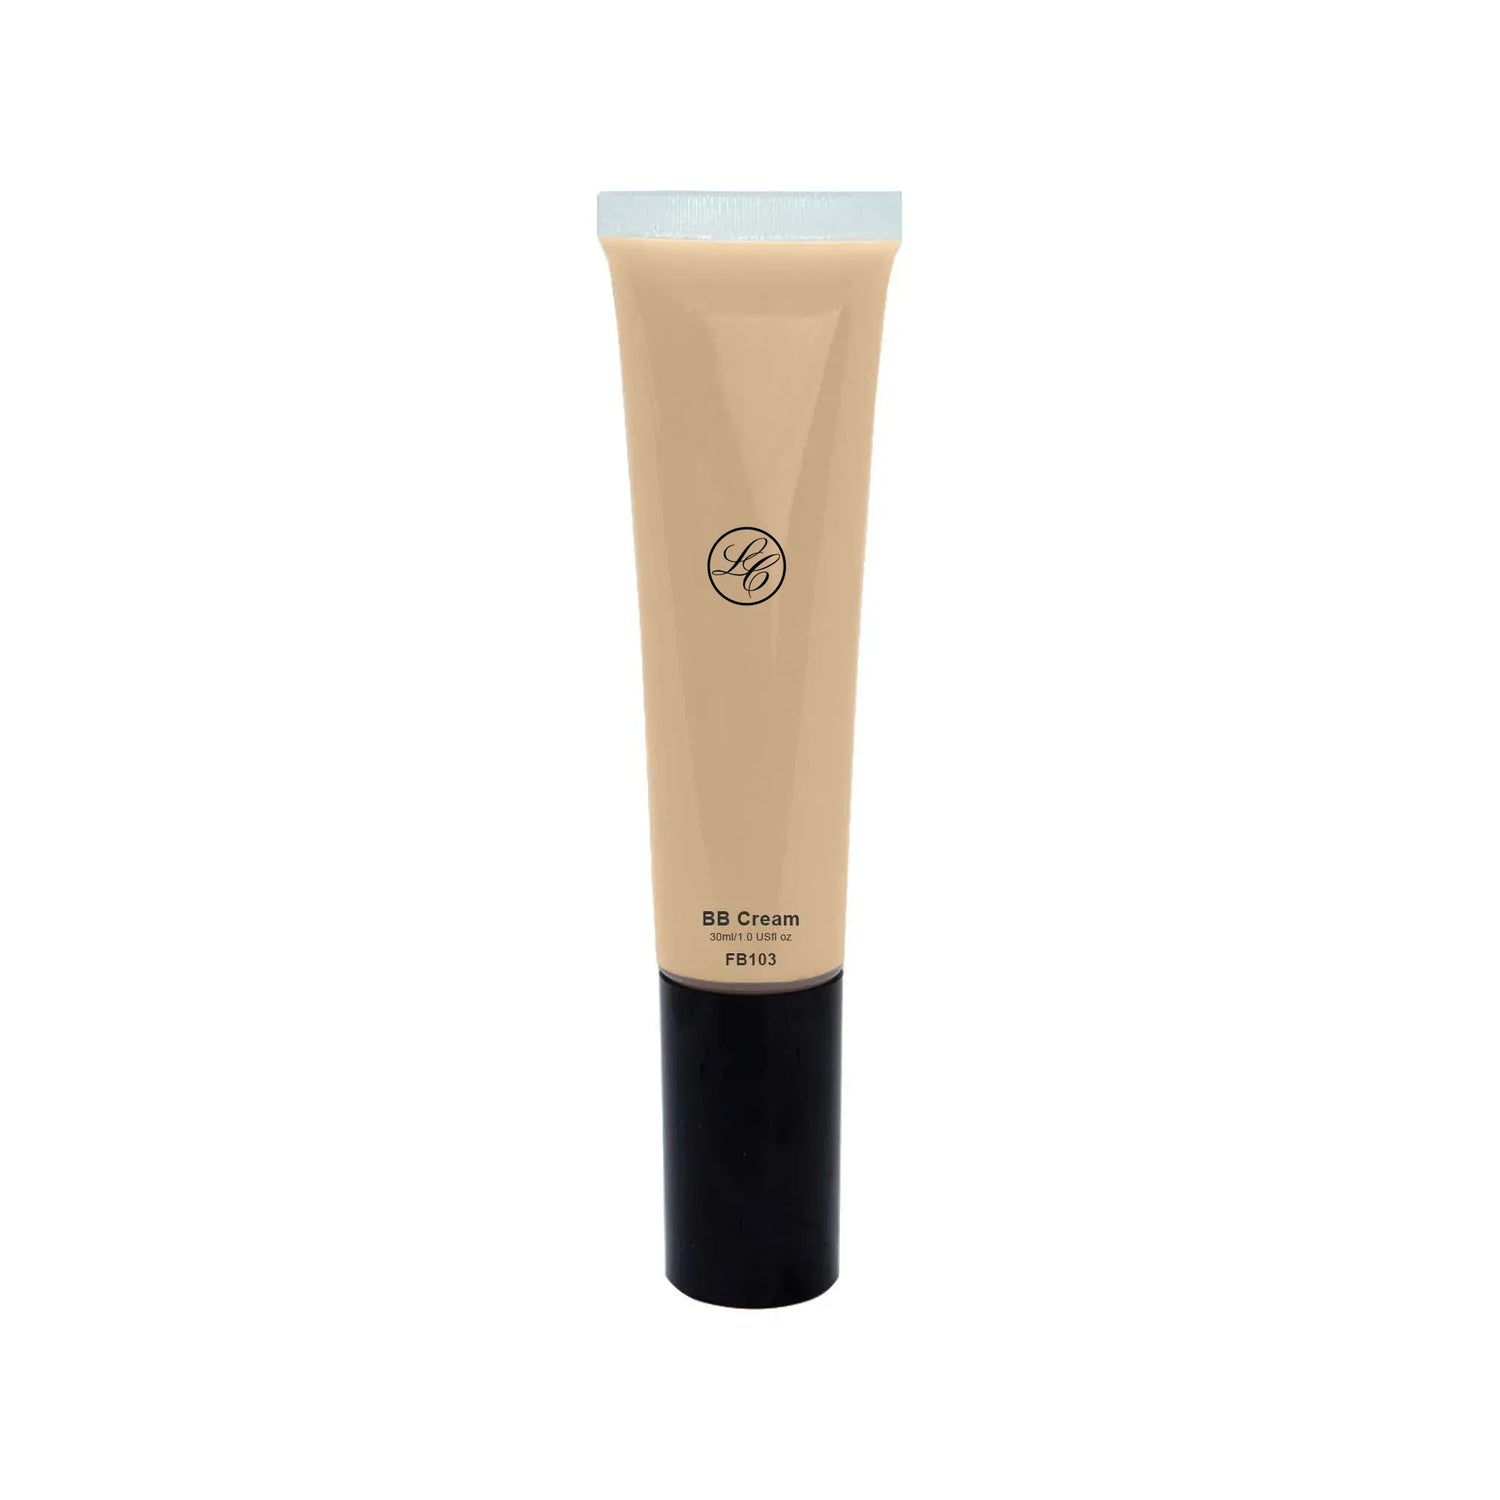 BB Cream with SPF - Terra Cotta - Lunox Cosmetics